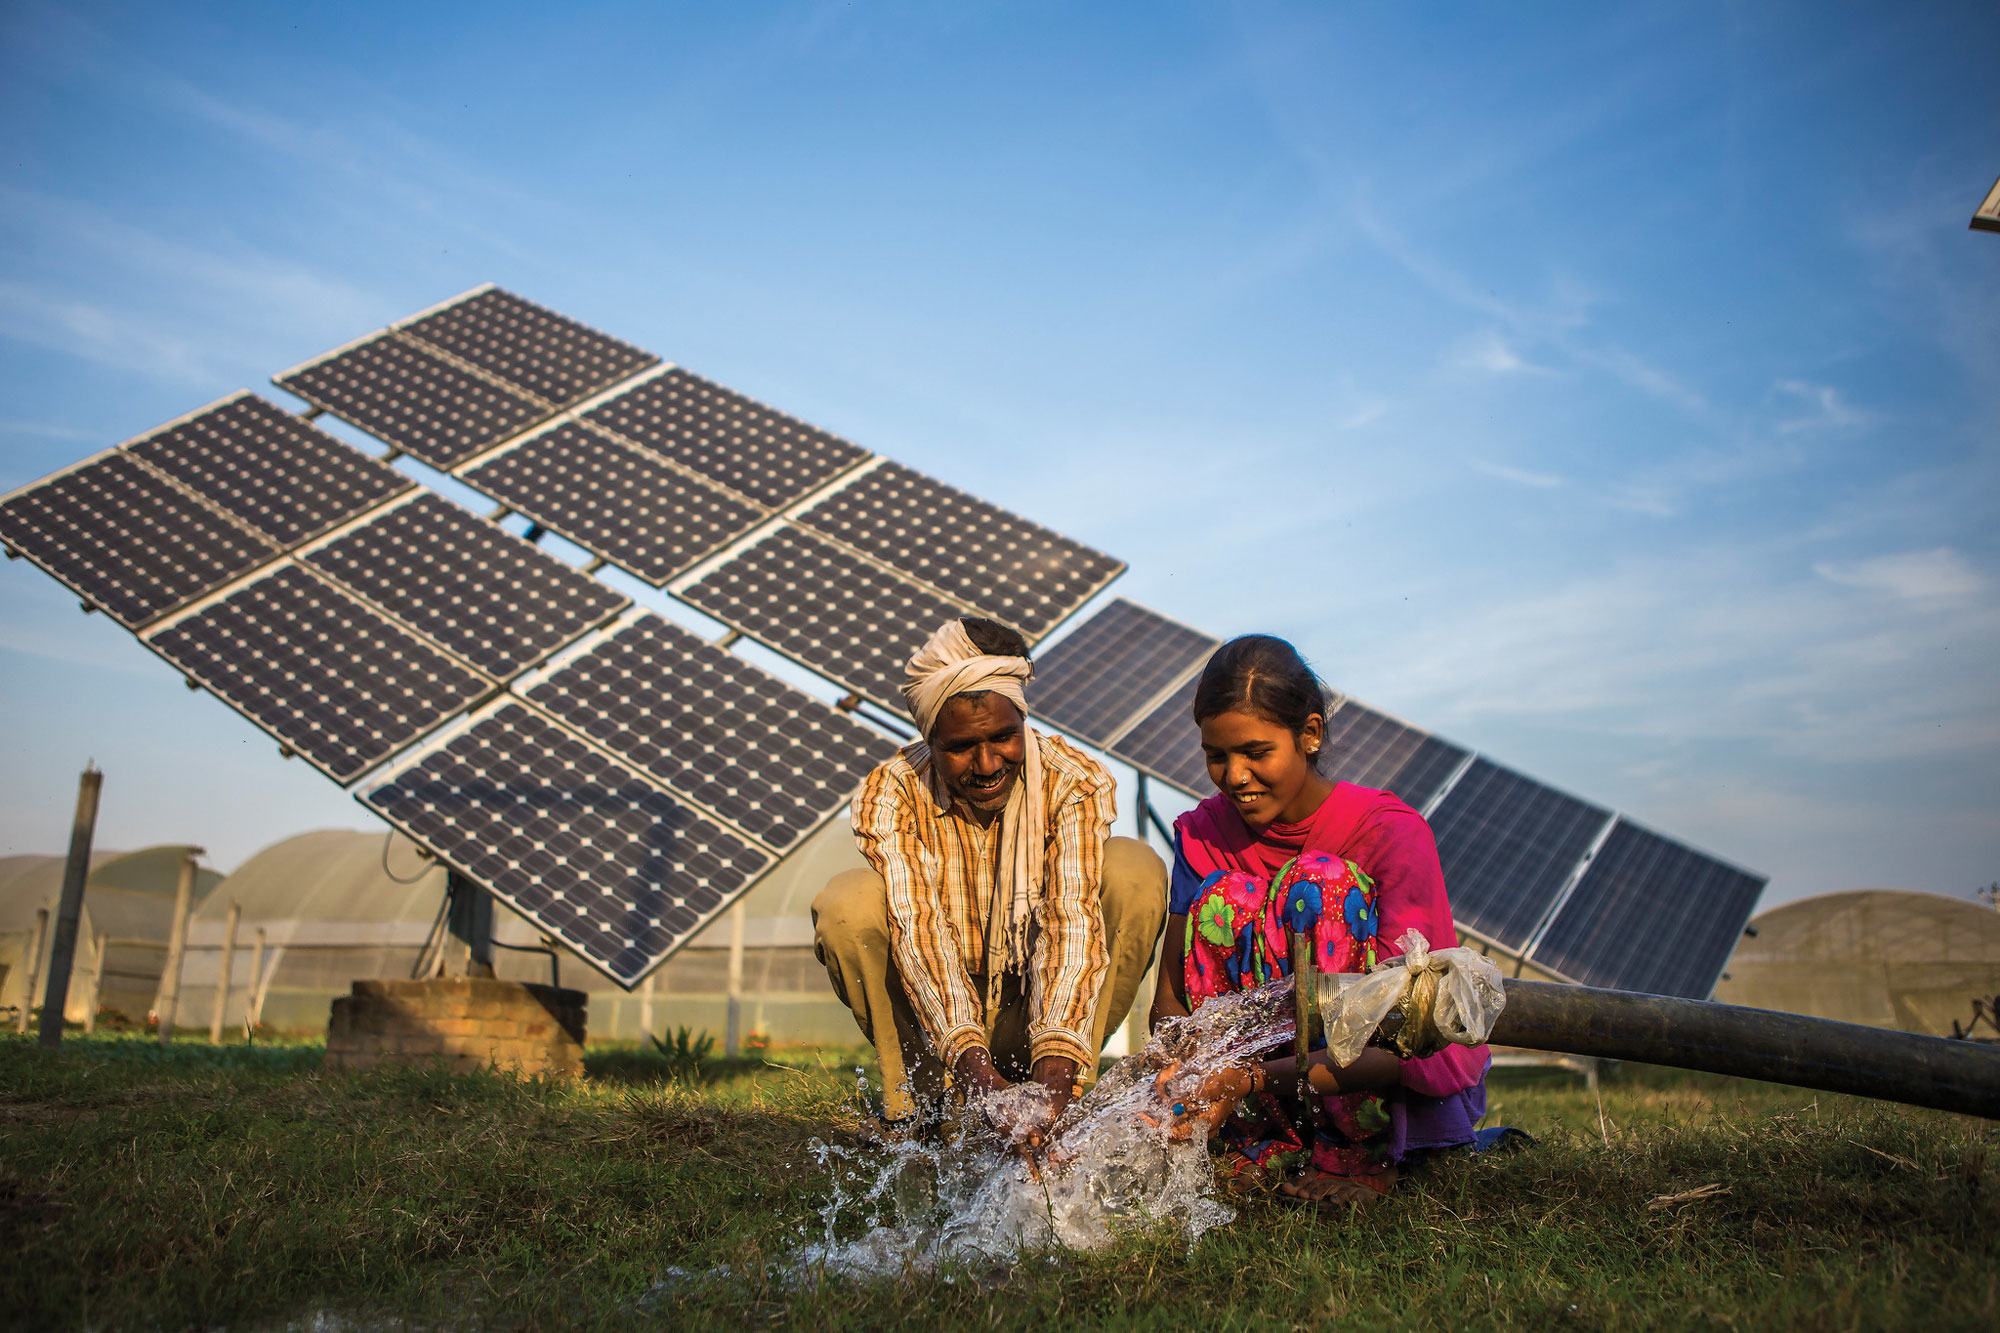 مزارعان يستخدمان المياه التي يتم ضخها من مضخة مياه تعمل بالطاقة الشمسية في جوريندر سينغ، جاغادري، الهند.